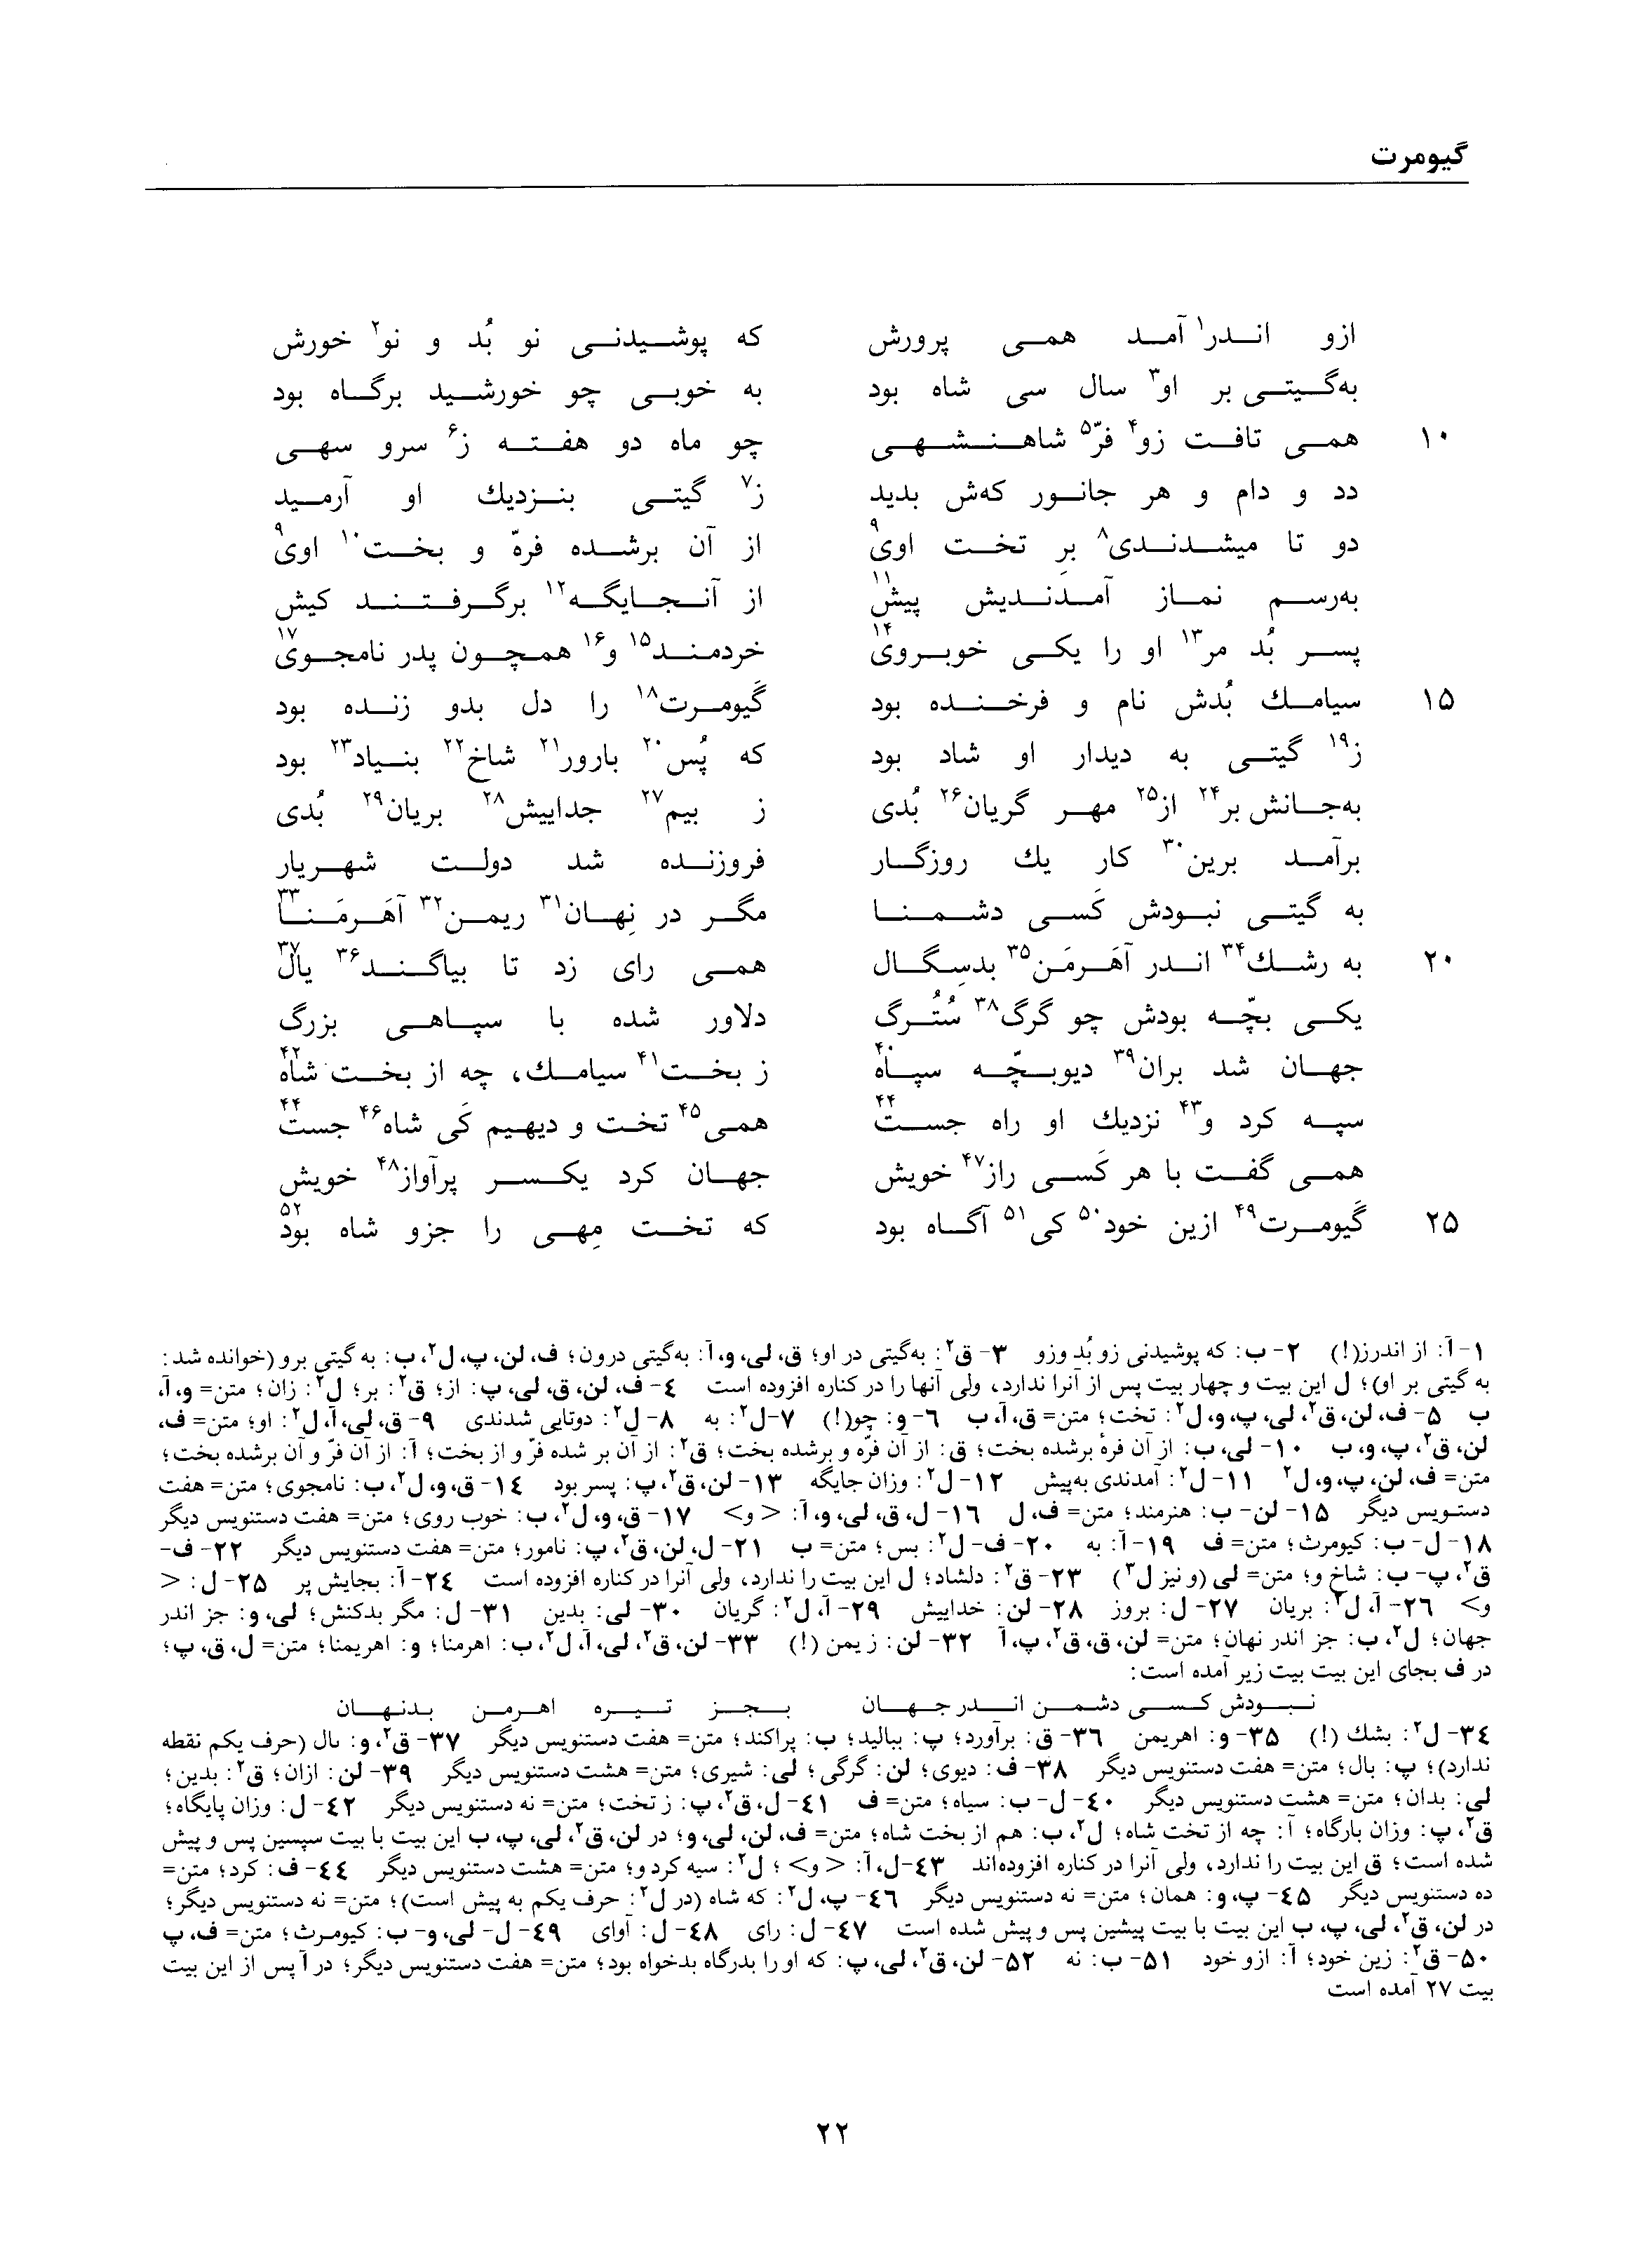 vol. 1, p. 22